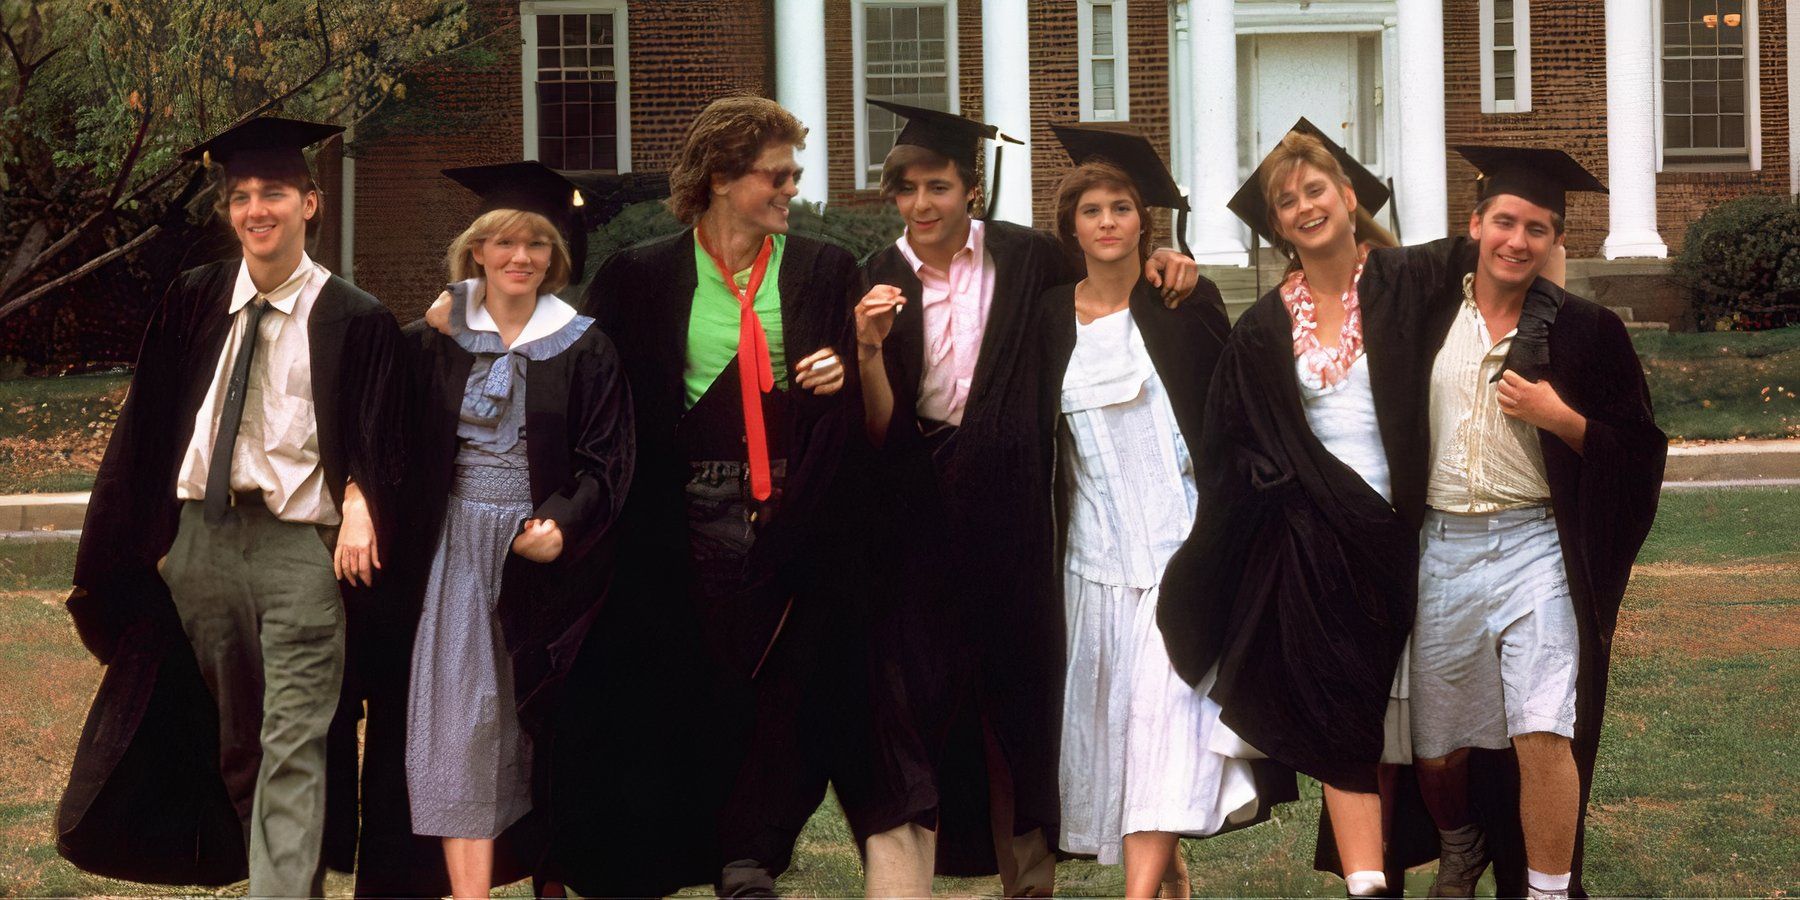 Captura de tela dos sete personagens principais do filme St Elmo's Fire saindo de um prédio universitário usando capelos e becas de formatura.